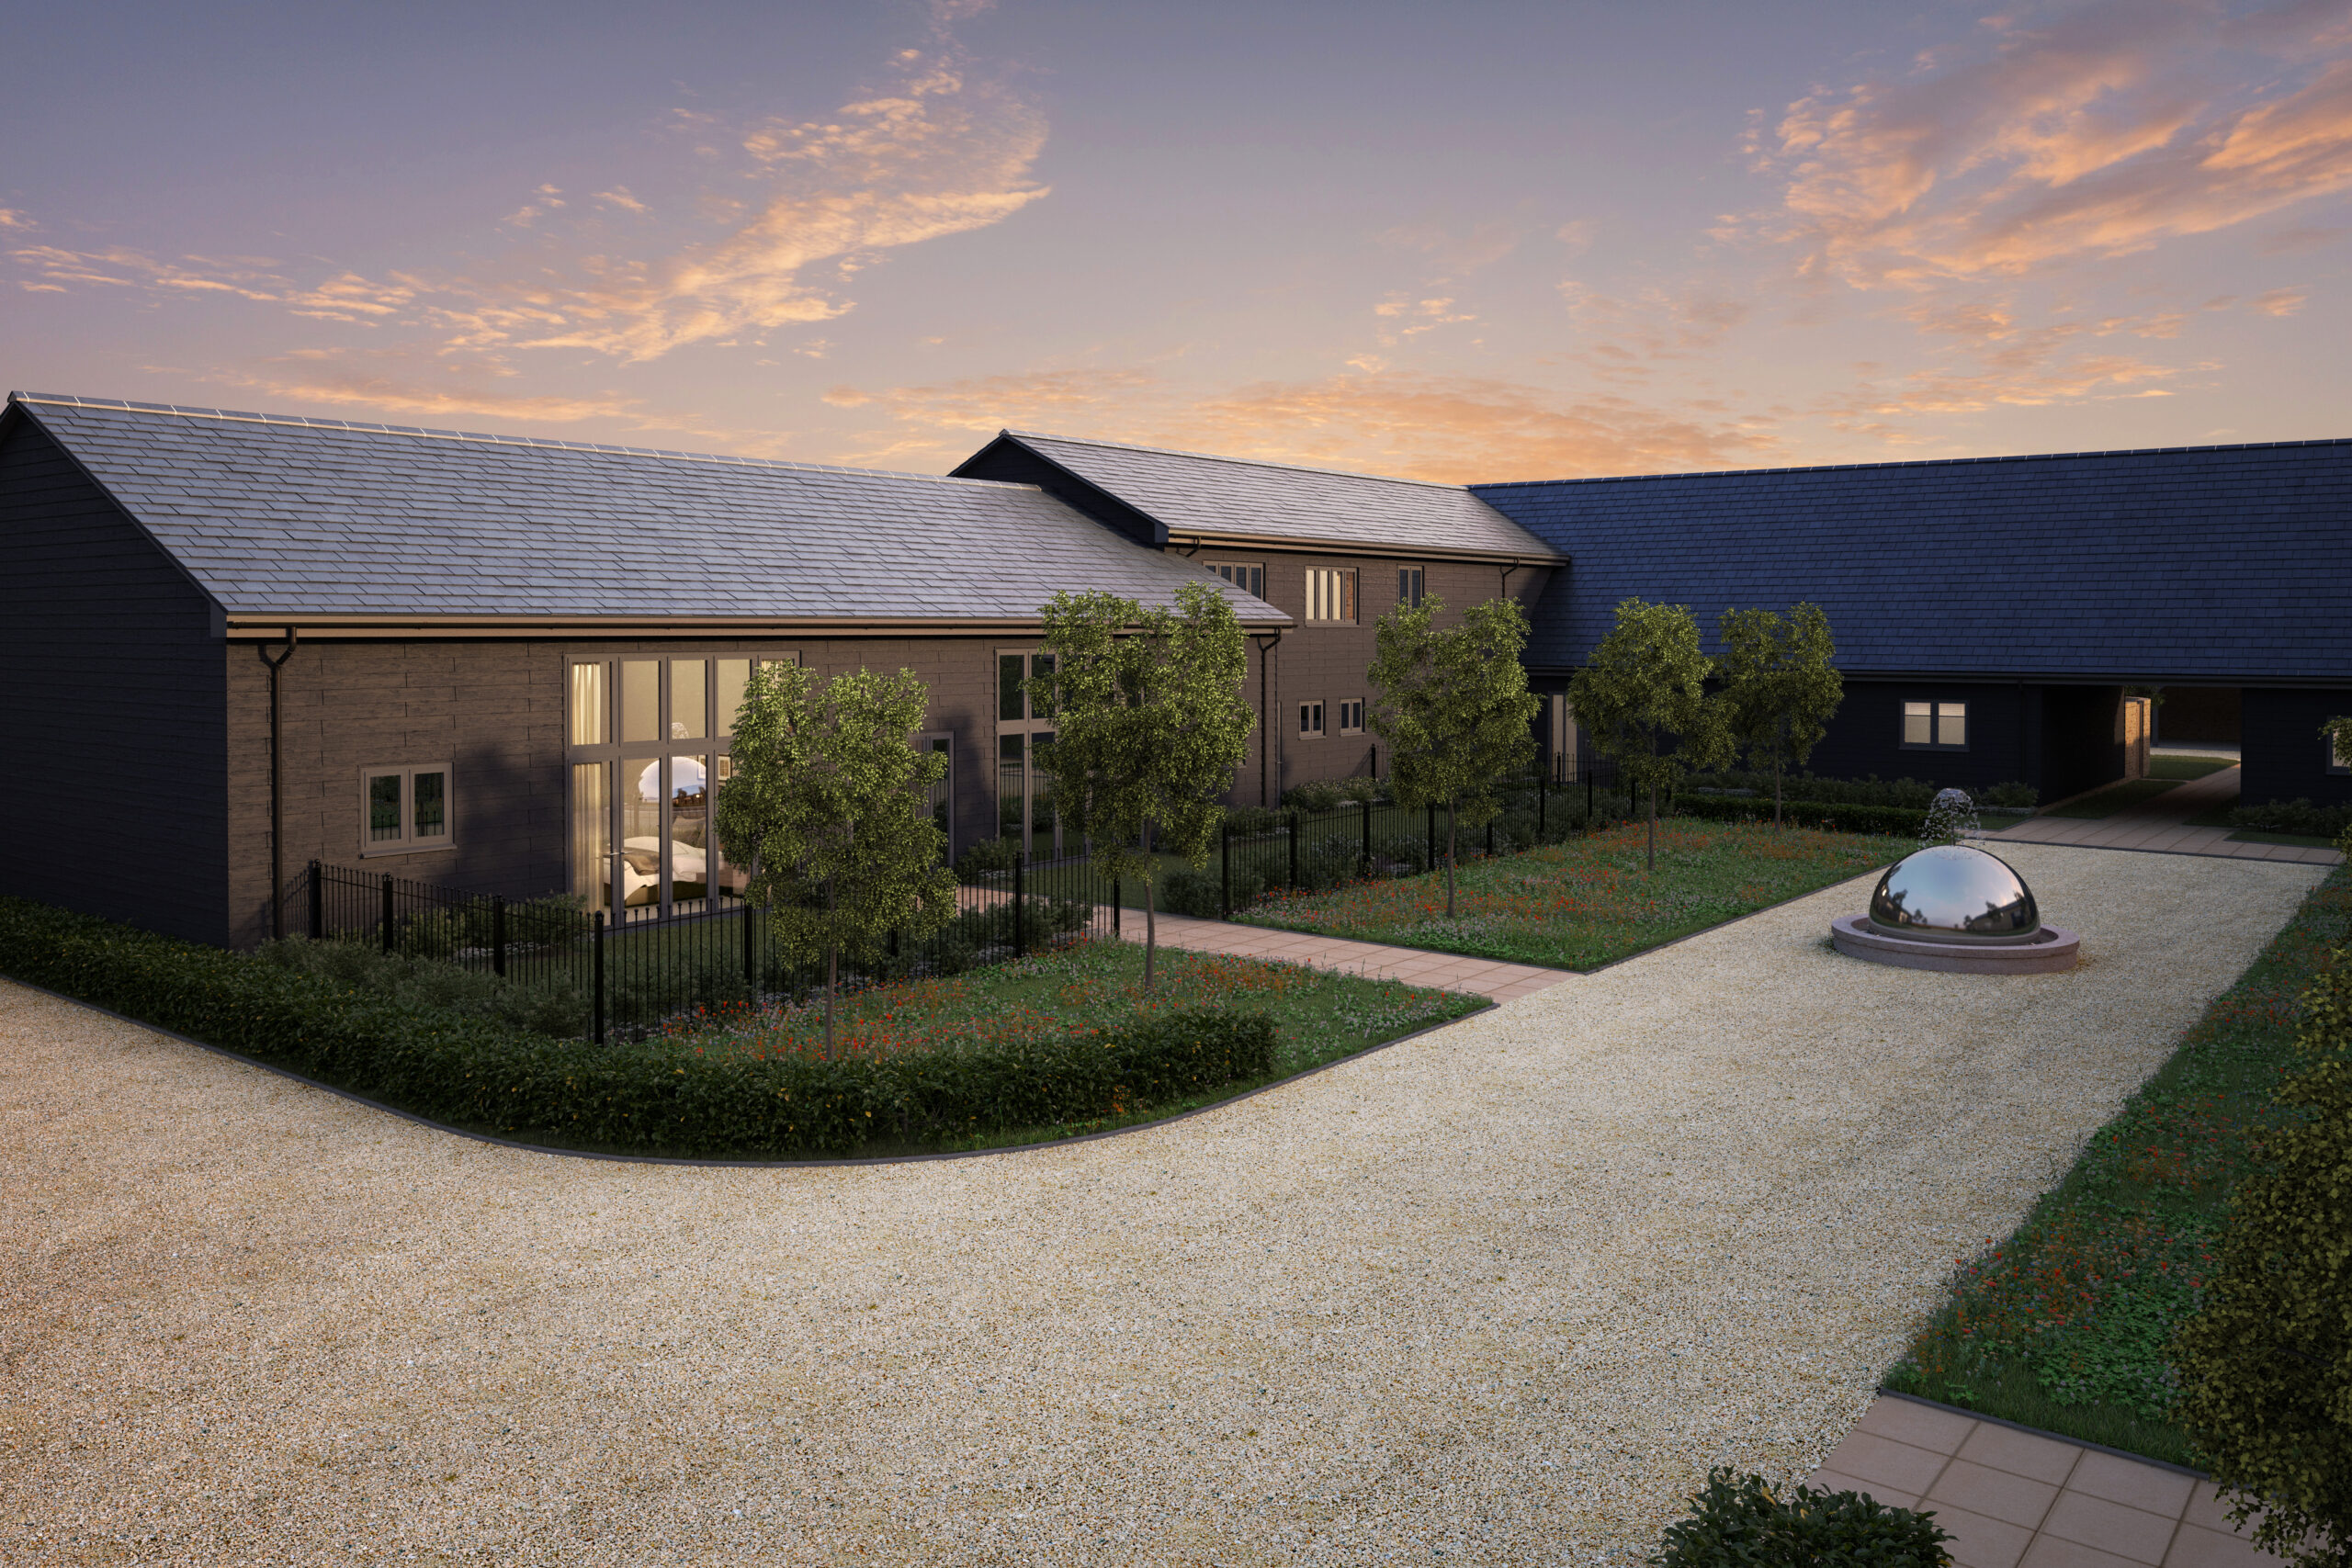 Hanbury View | 9 new homes in Ware Hertfordshire